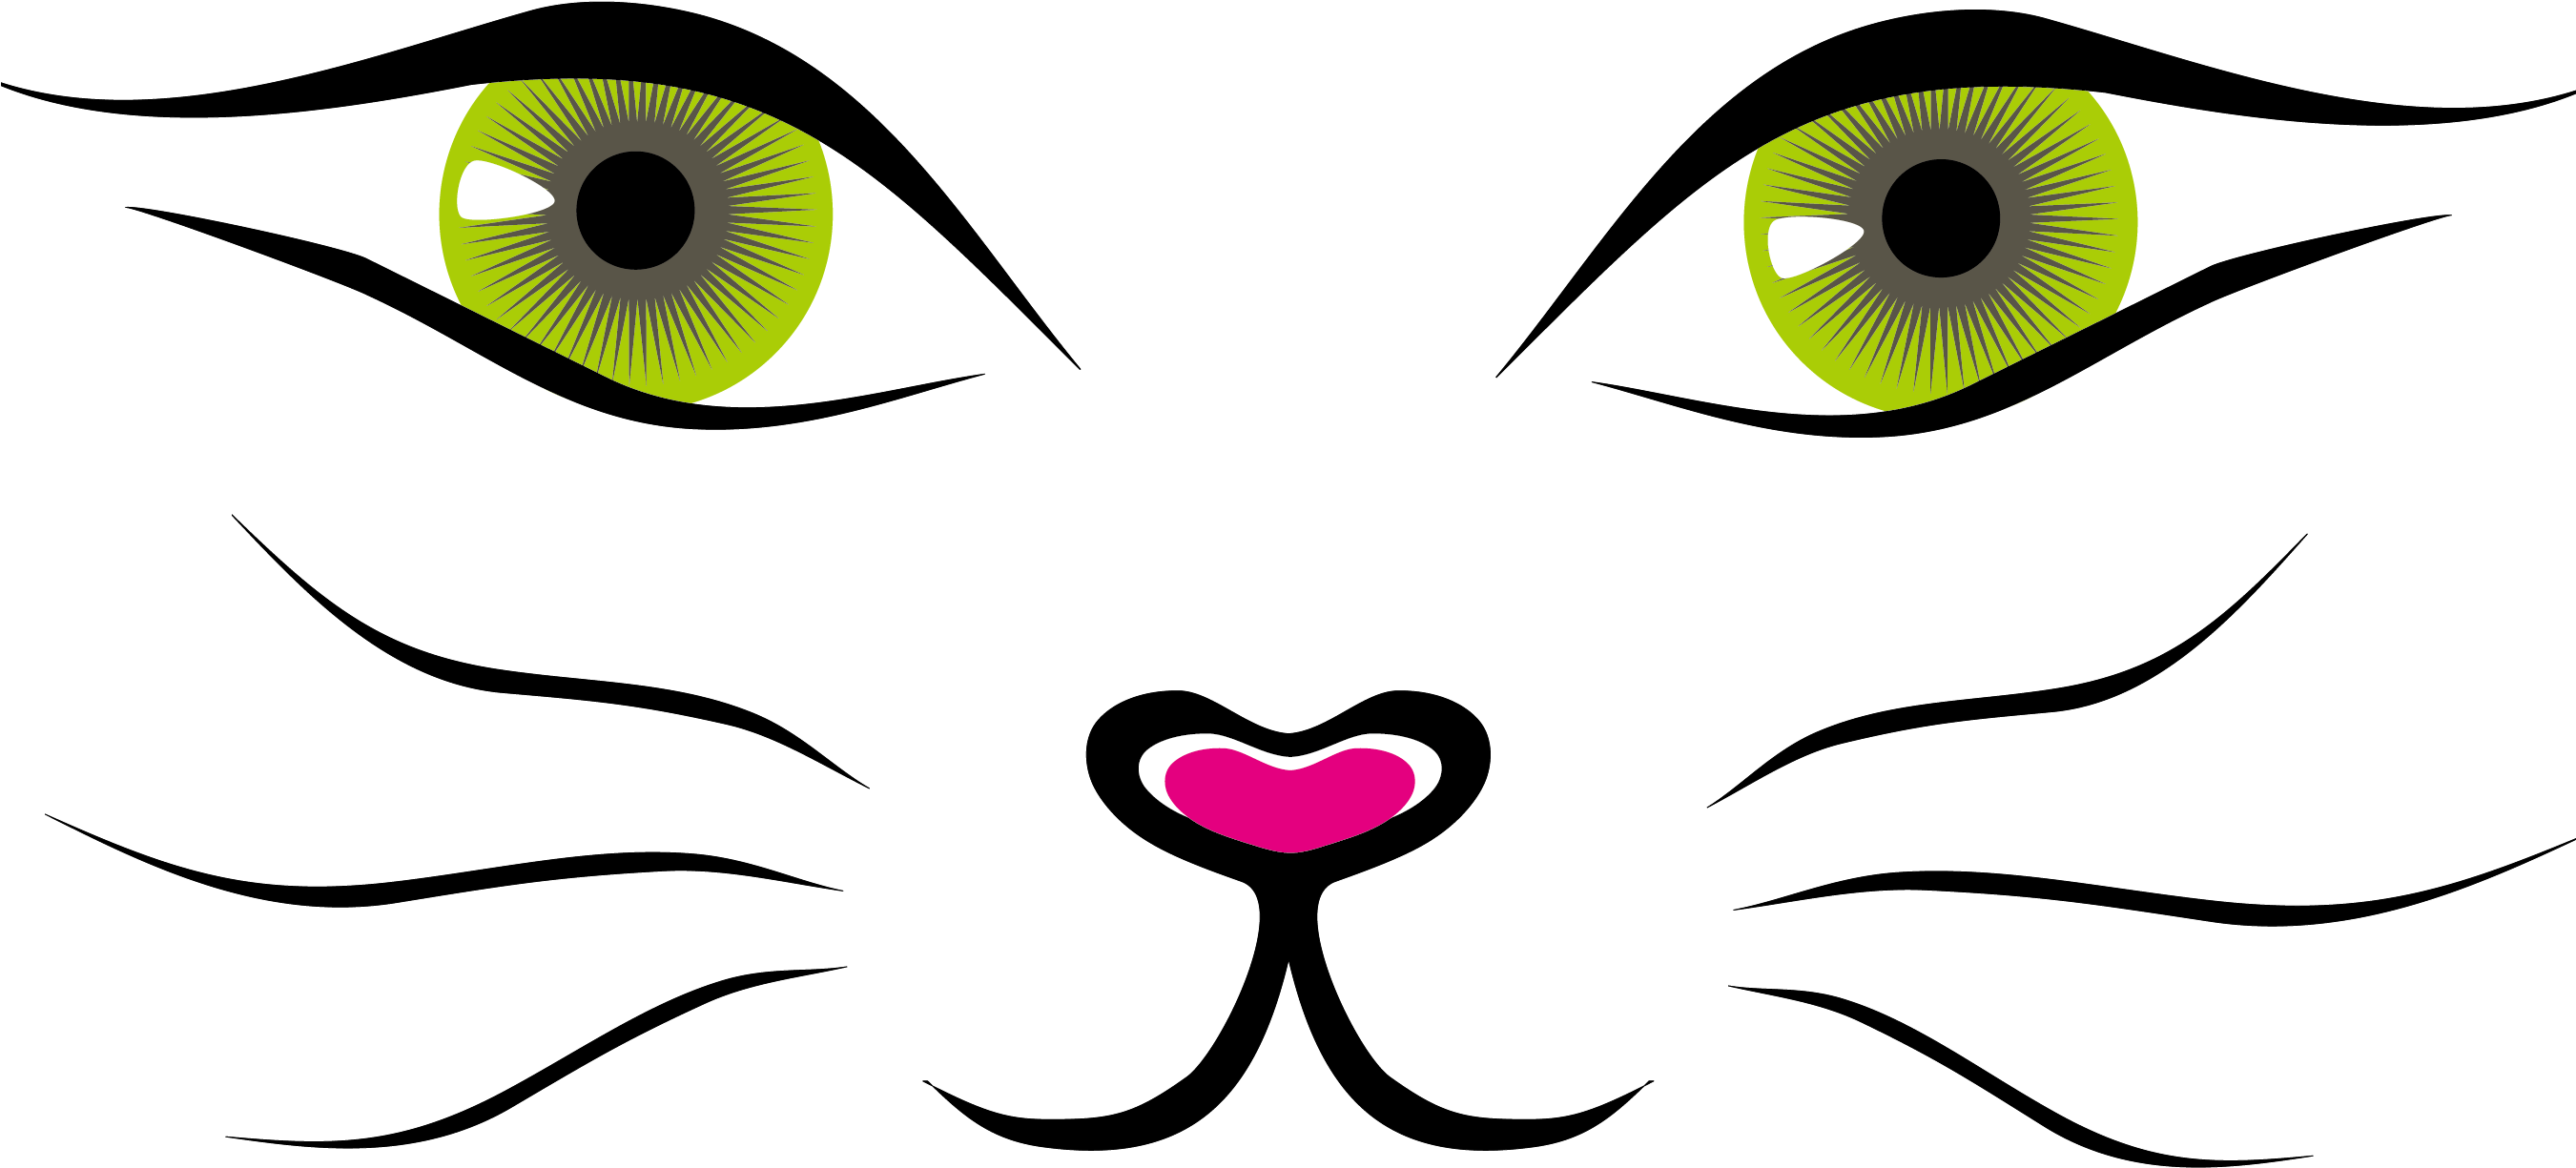 Cat Cartoon Face Download Transparent PNG Image